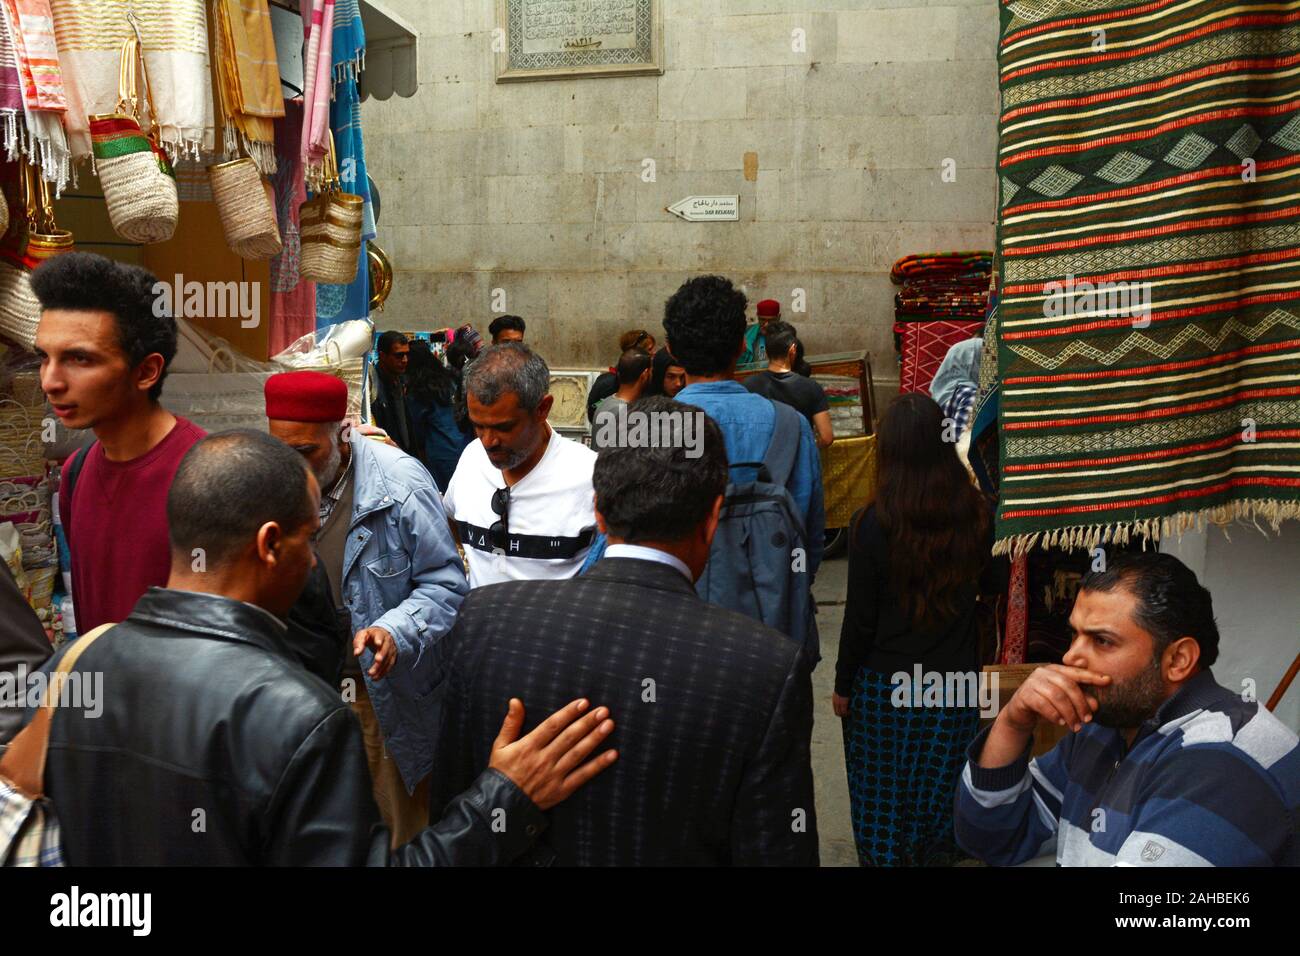 Une foule de Tunisiens locaux passer devant des boutiques de souvenirs dans le souk de la Kasbah de la médina (vieille ville) de Tunis, Tunisie. Banque D'Images